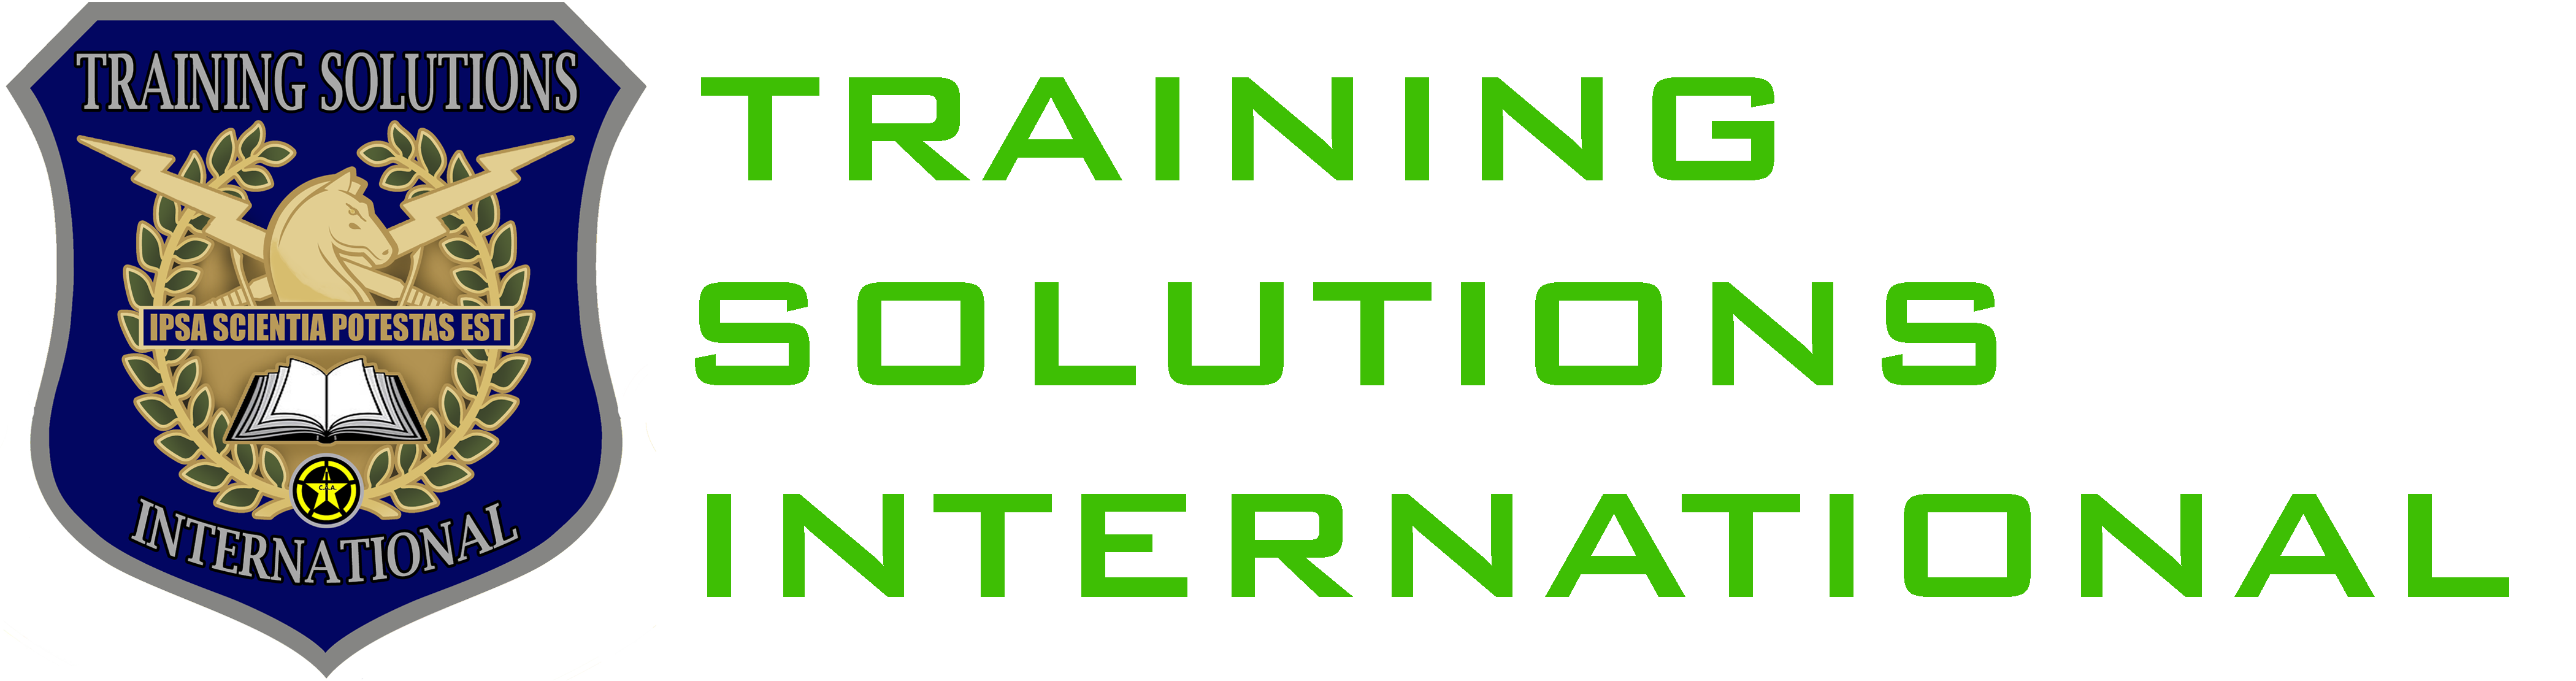 Training Solutions International Website Logo